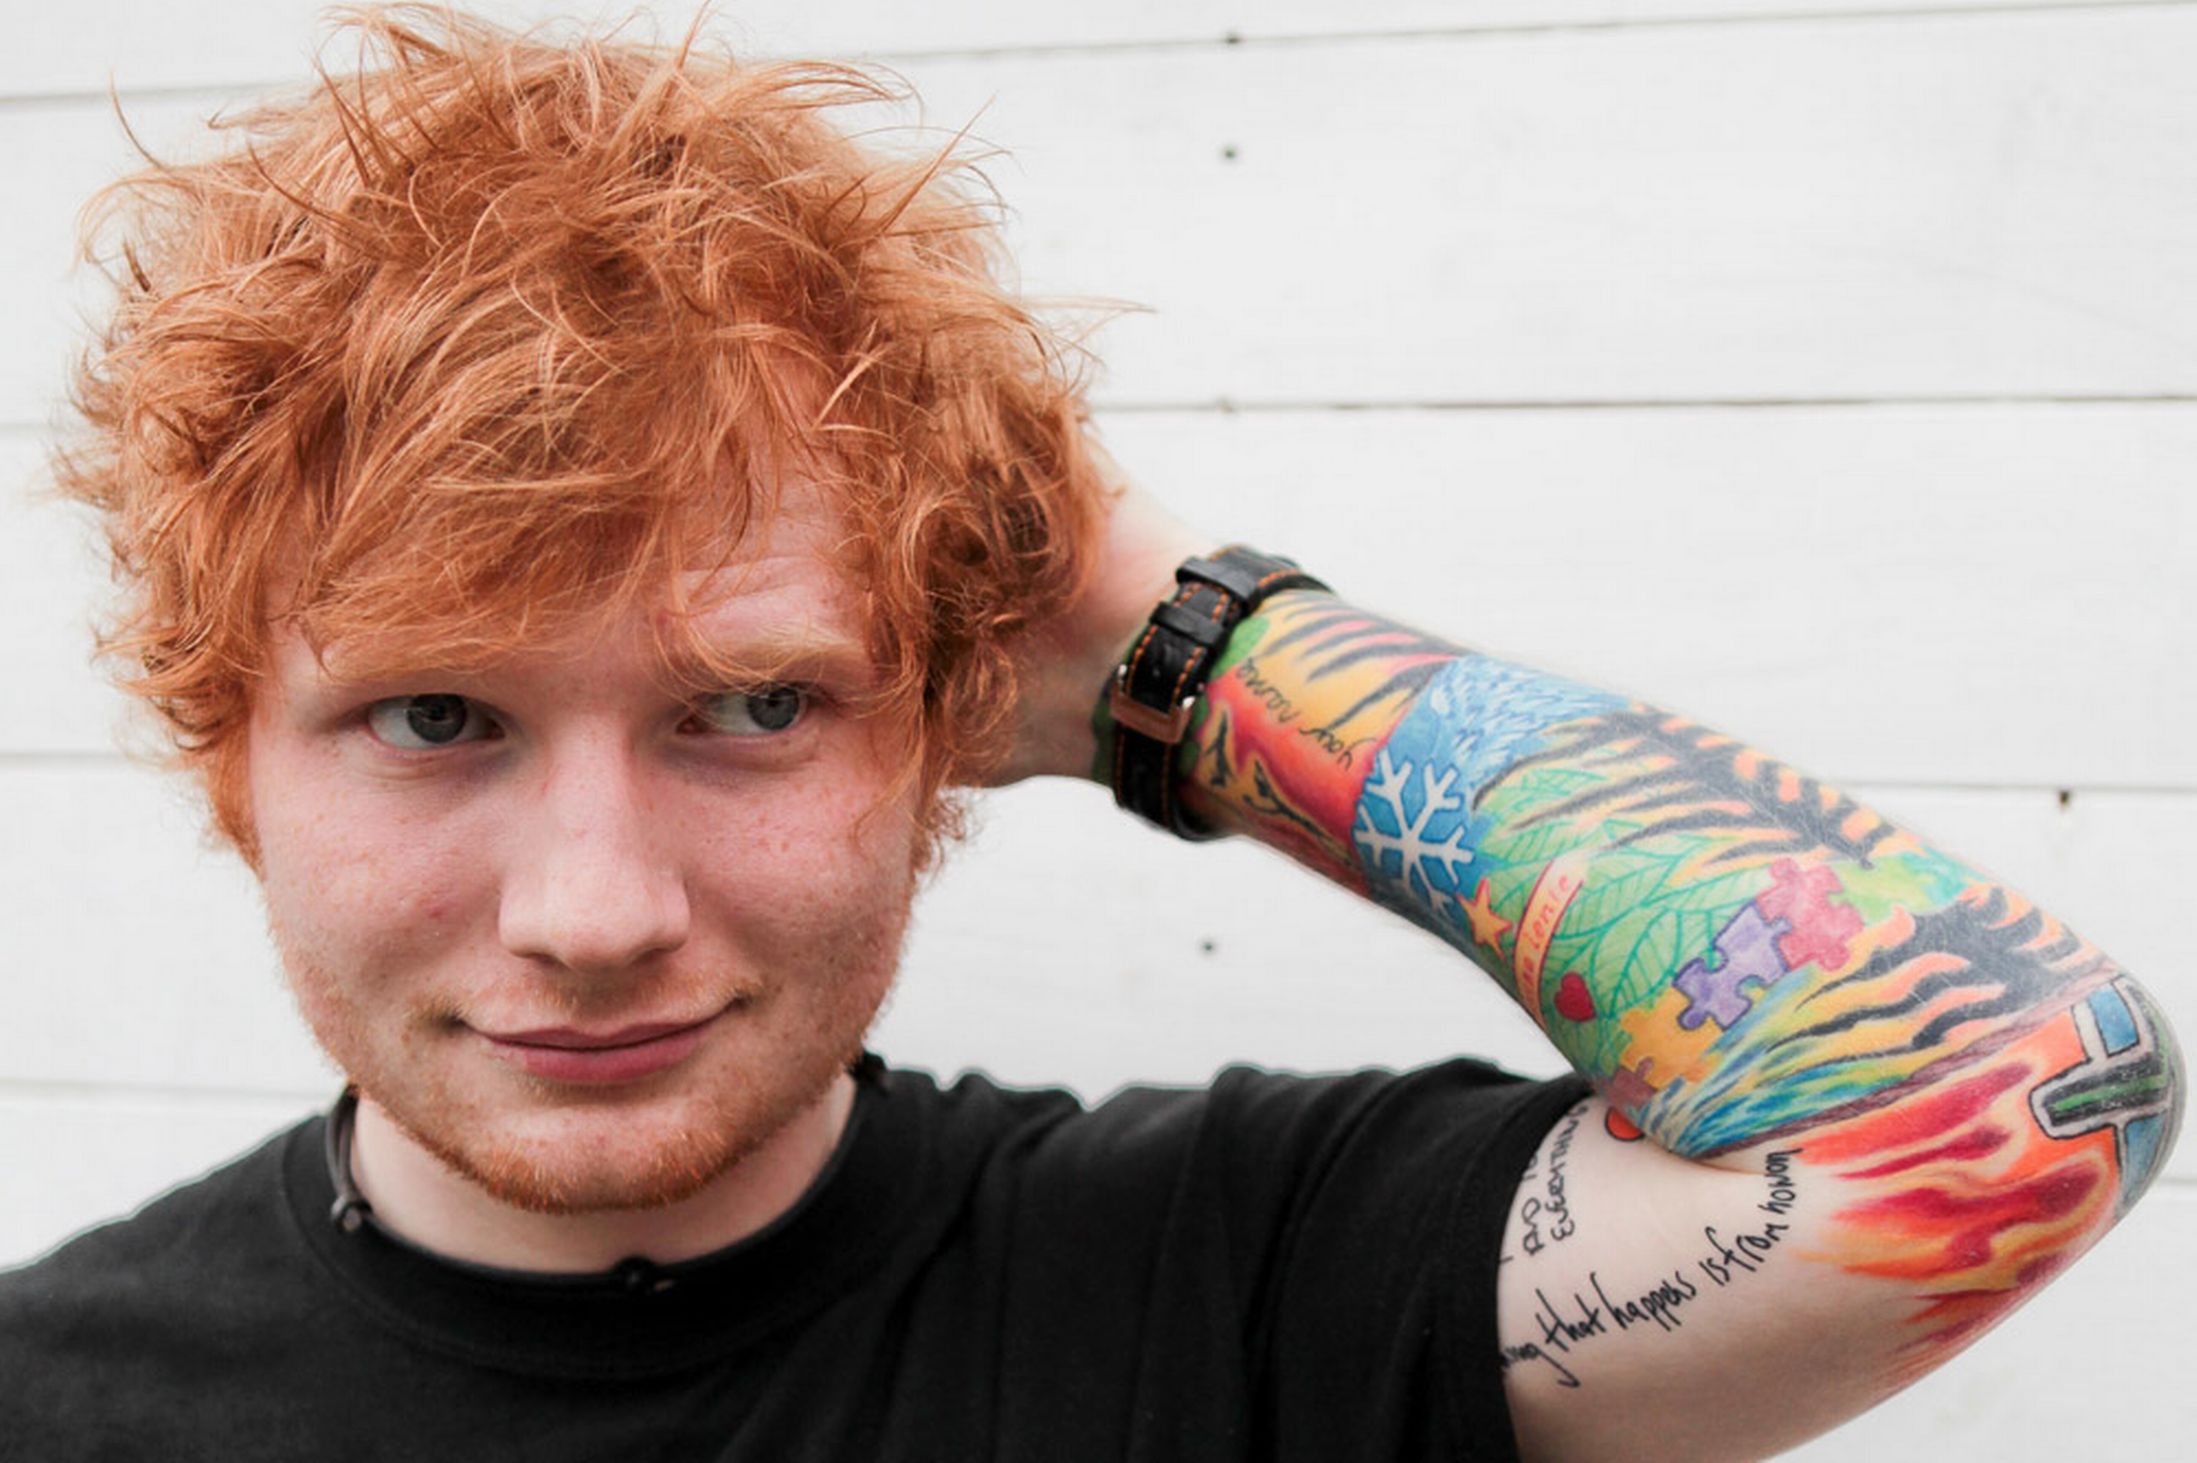 Ed Sheeran Beats His "Thinking Out Loud" Track